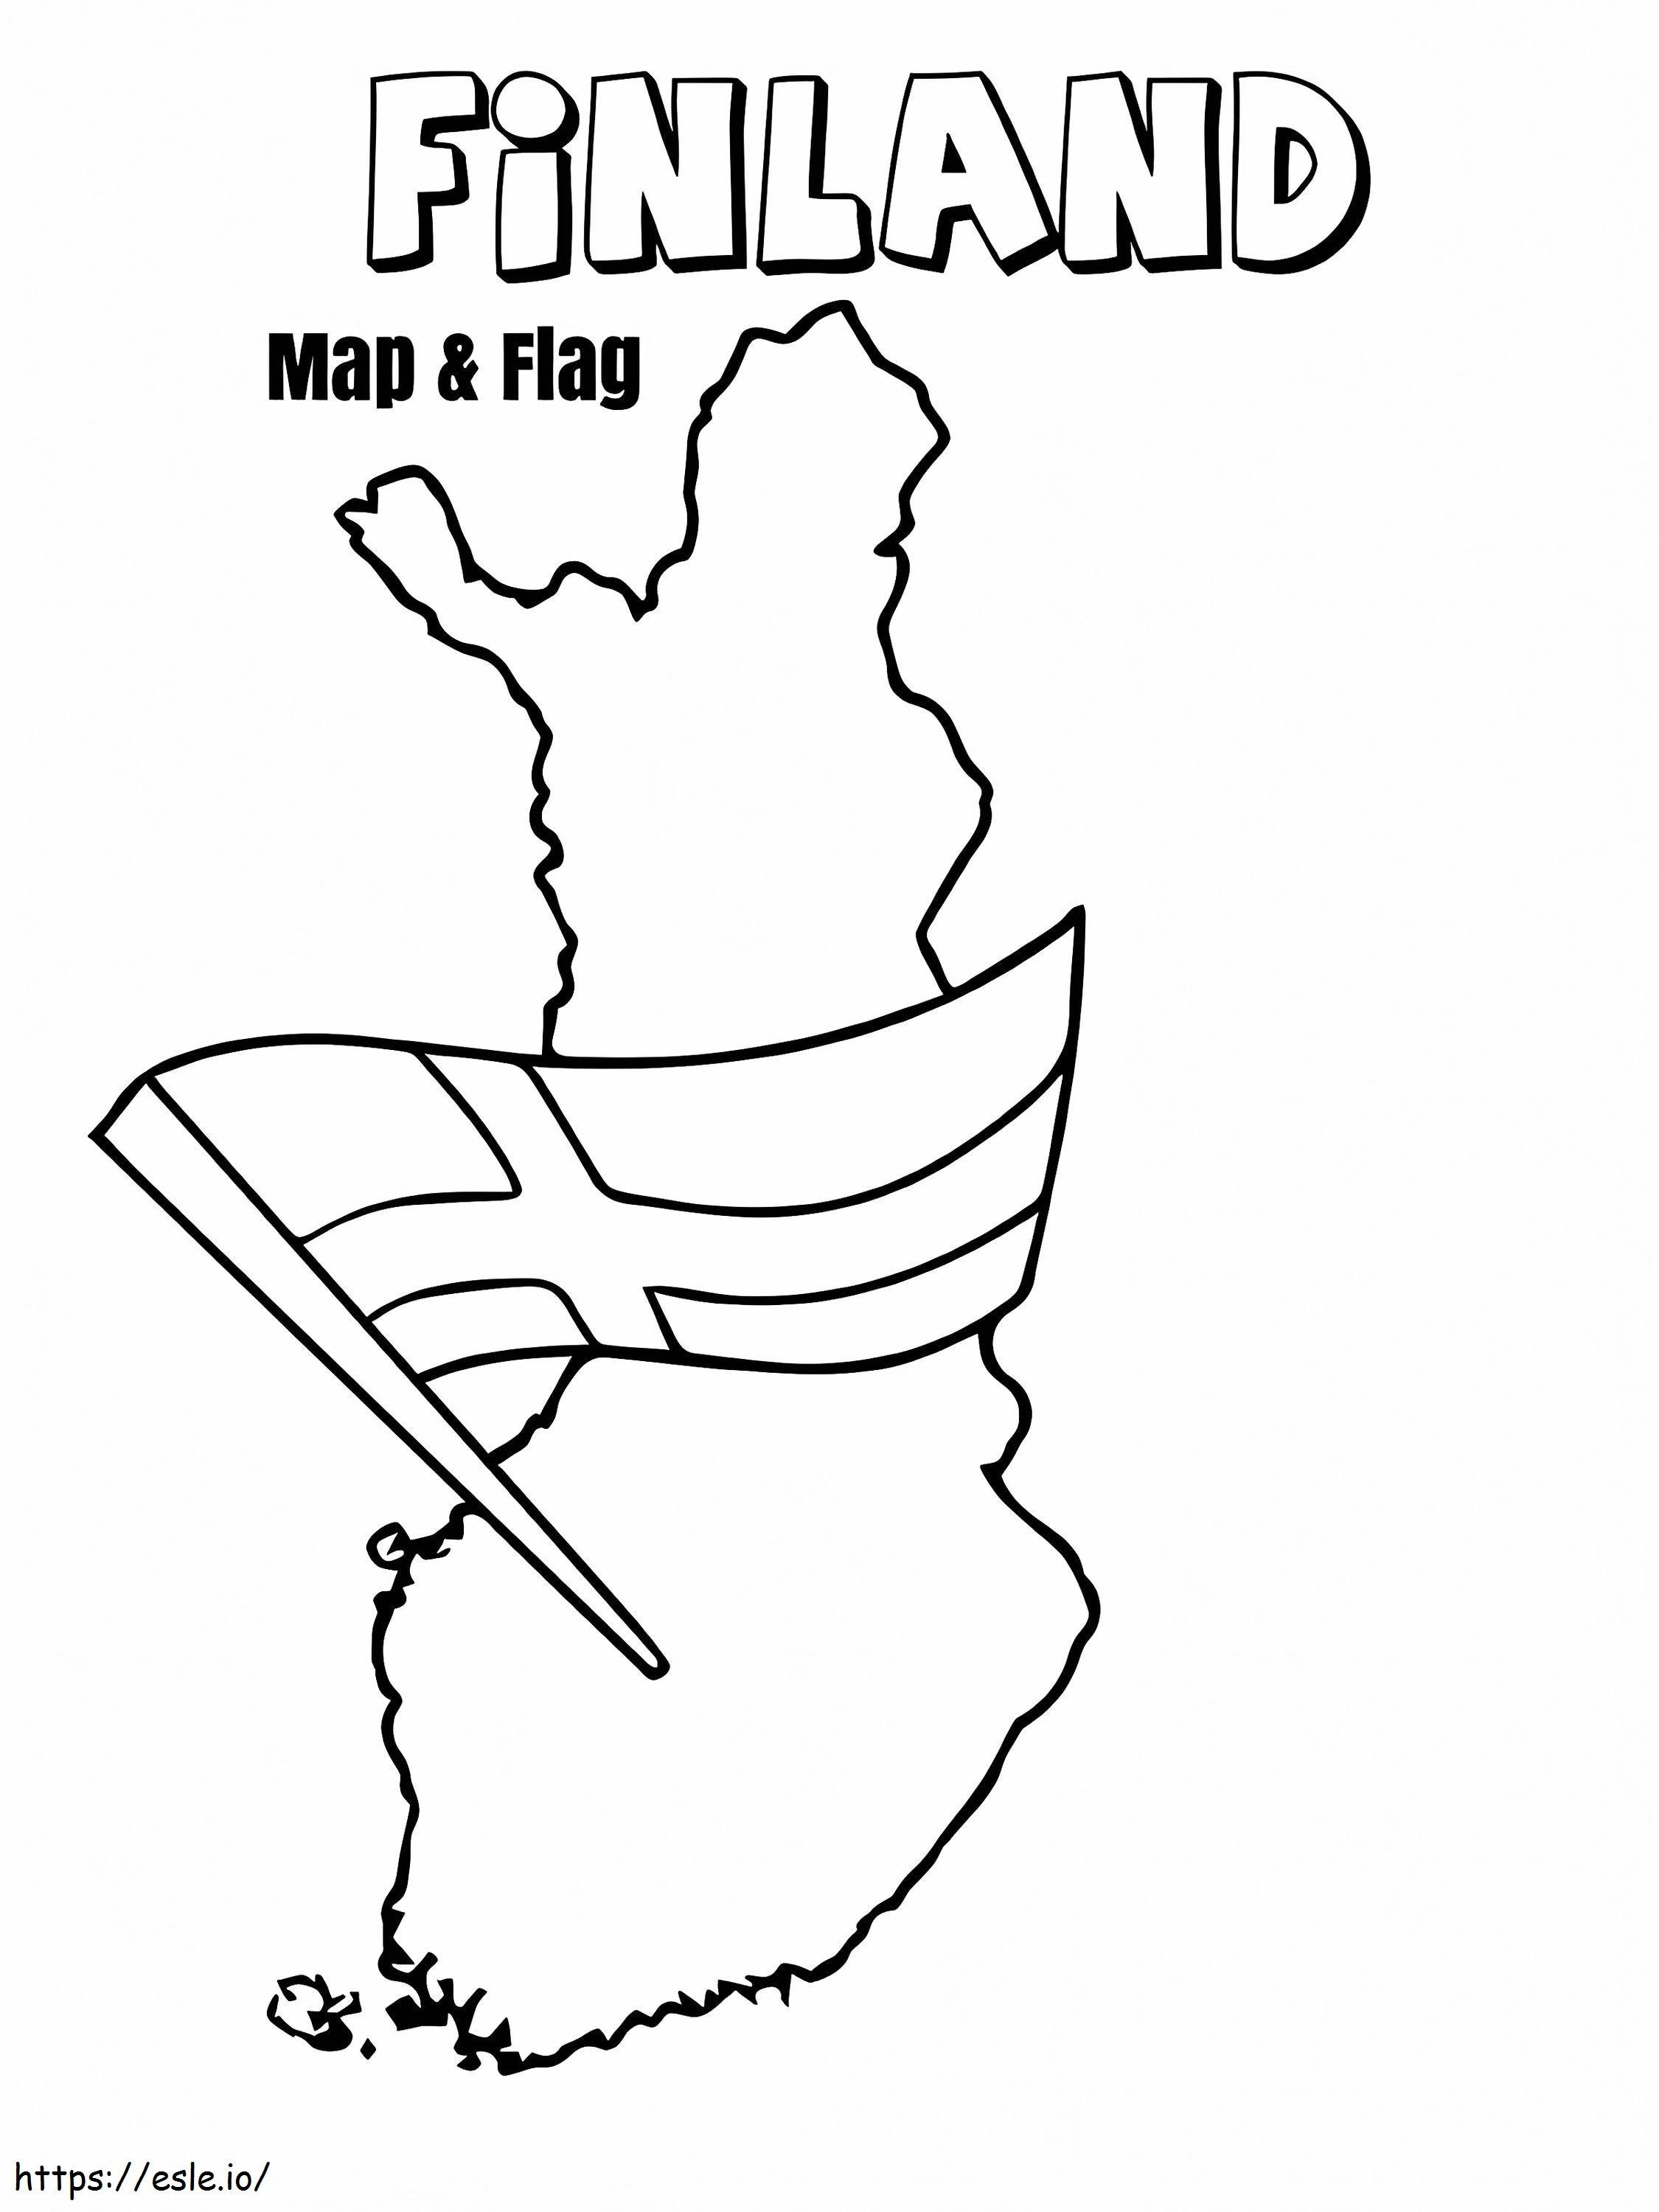 Mapa y bandera de Finlandia para colorear